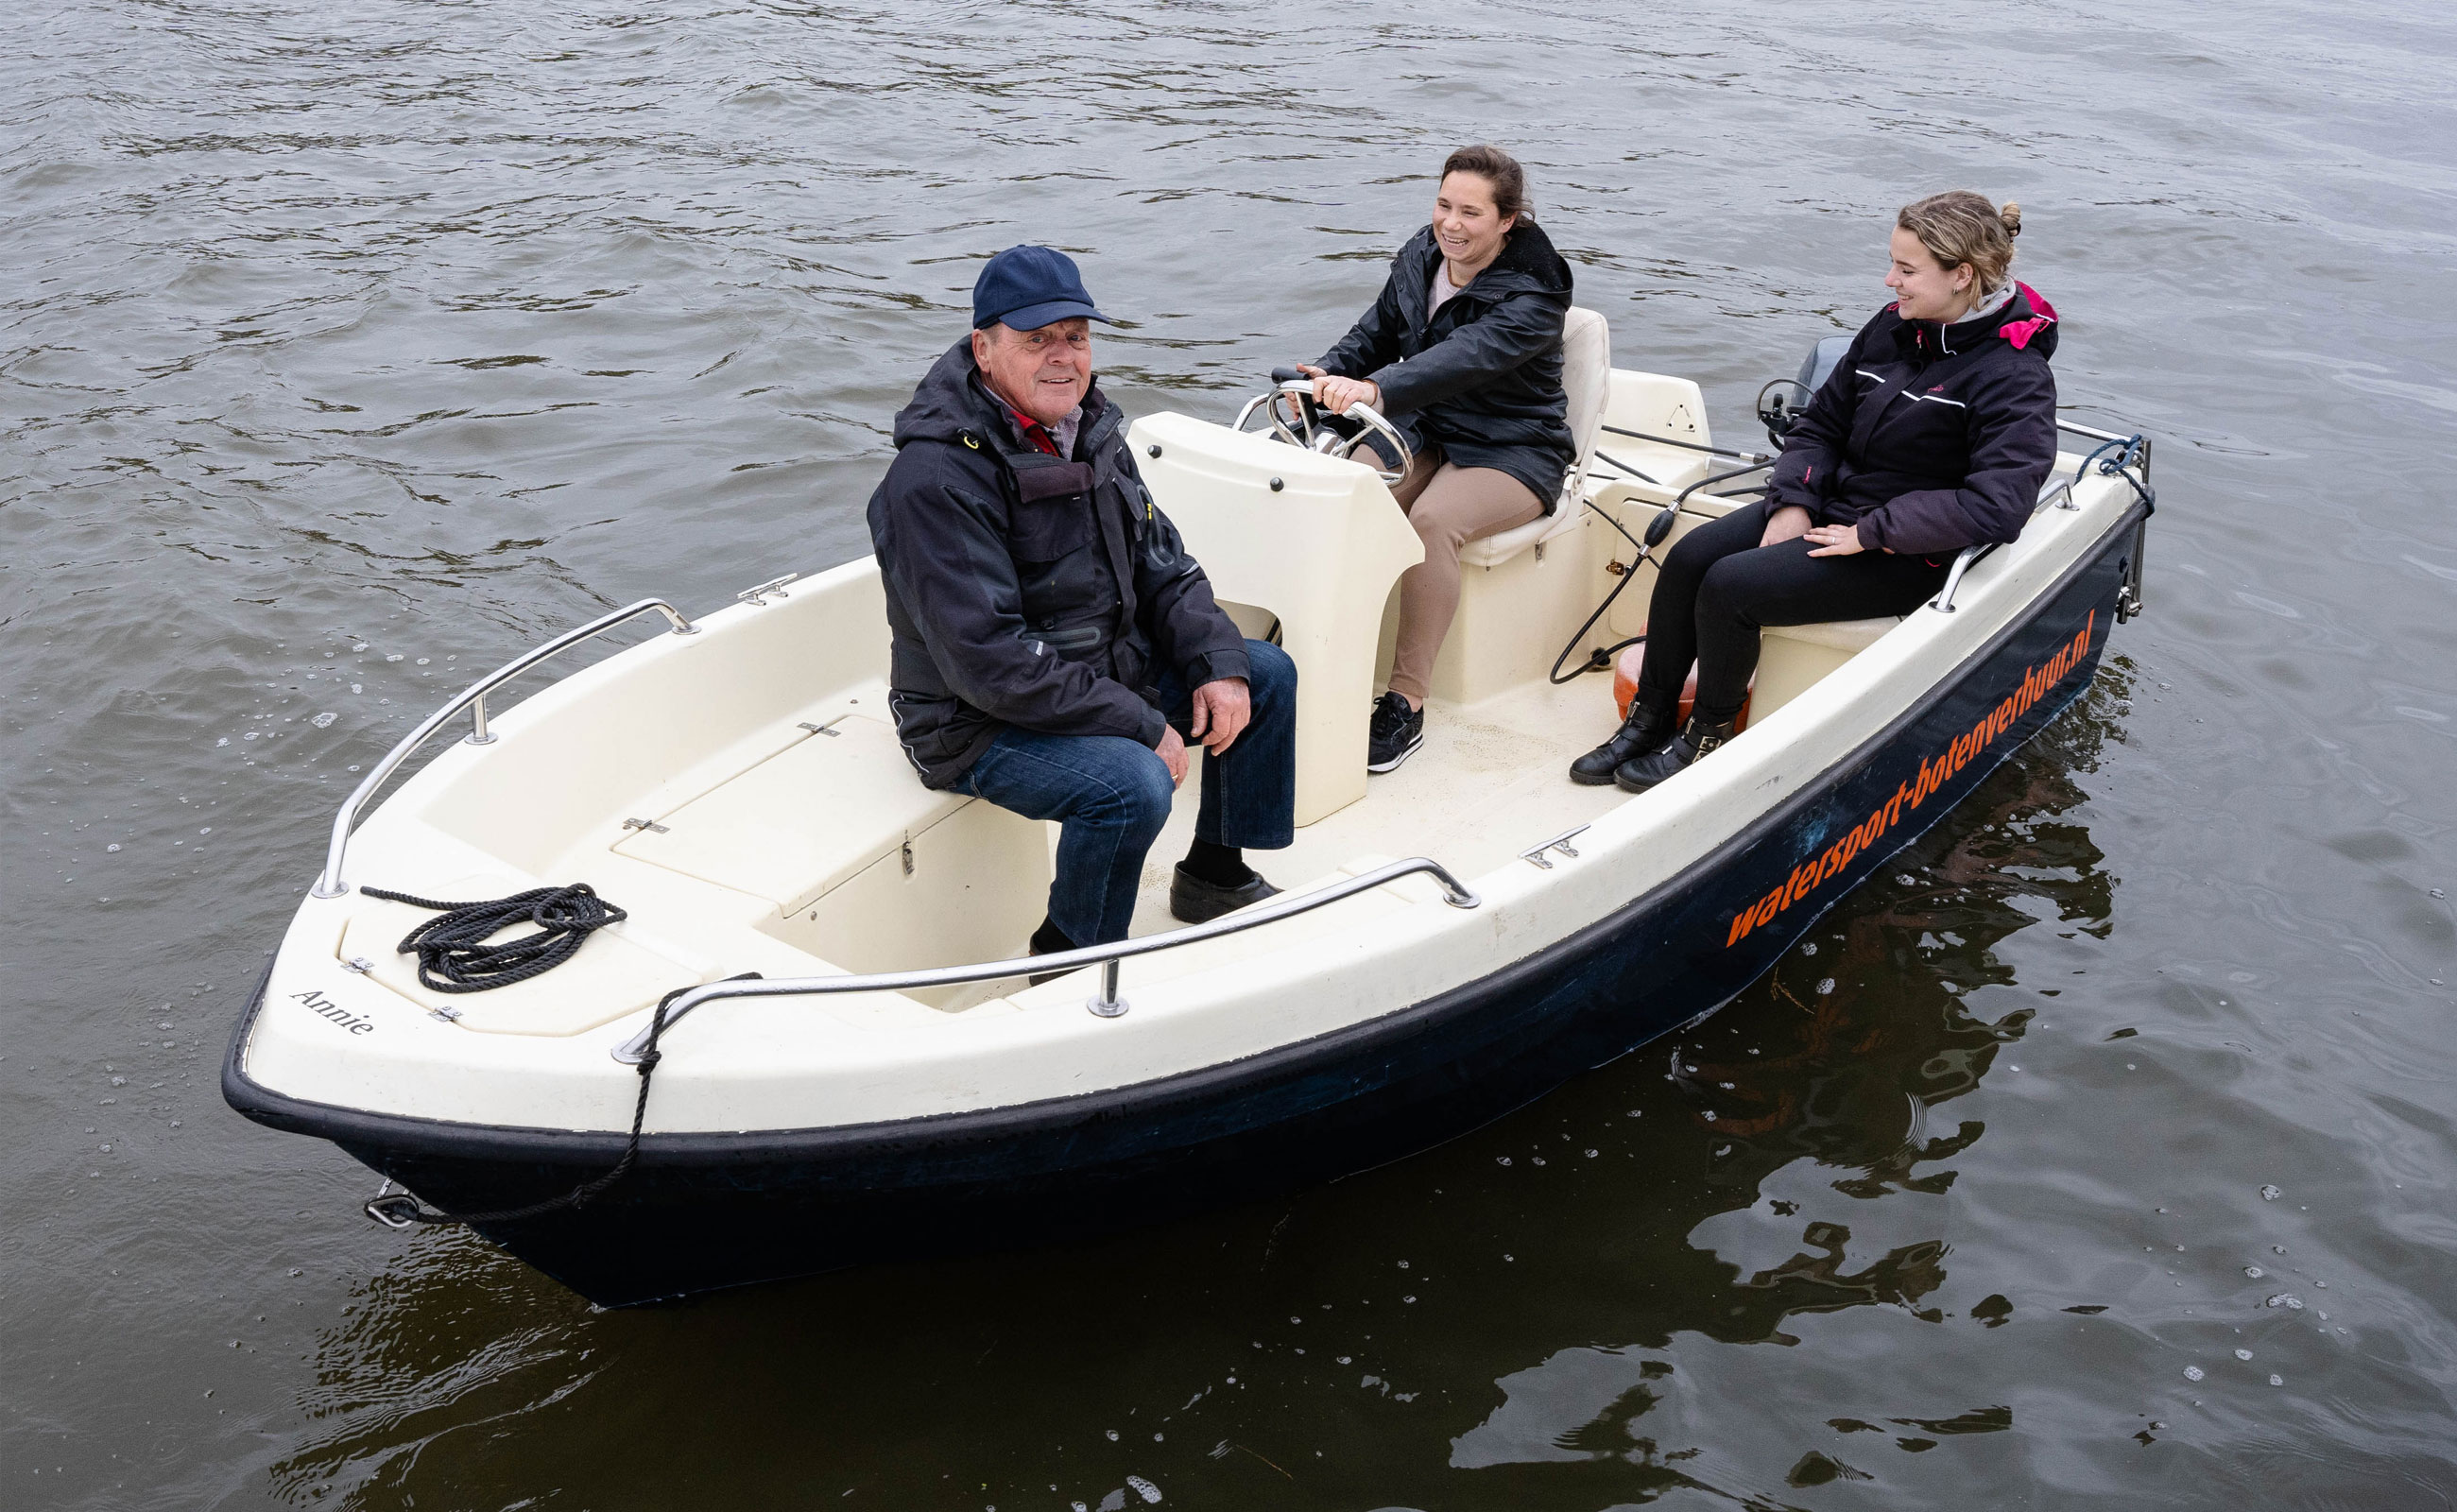 Sportboot huren in De Biesbosch | Watersport Botenverhuur